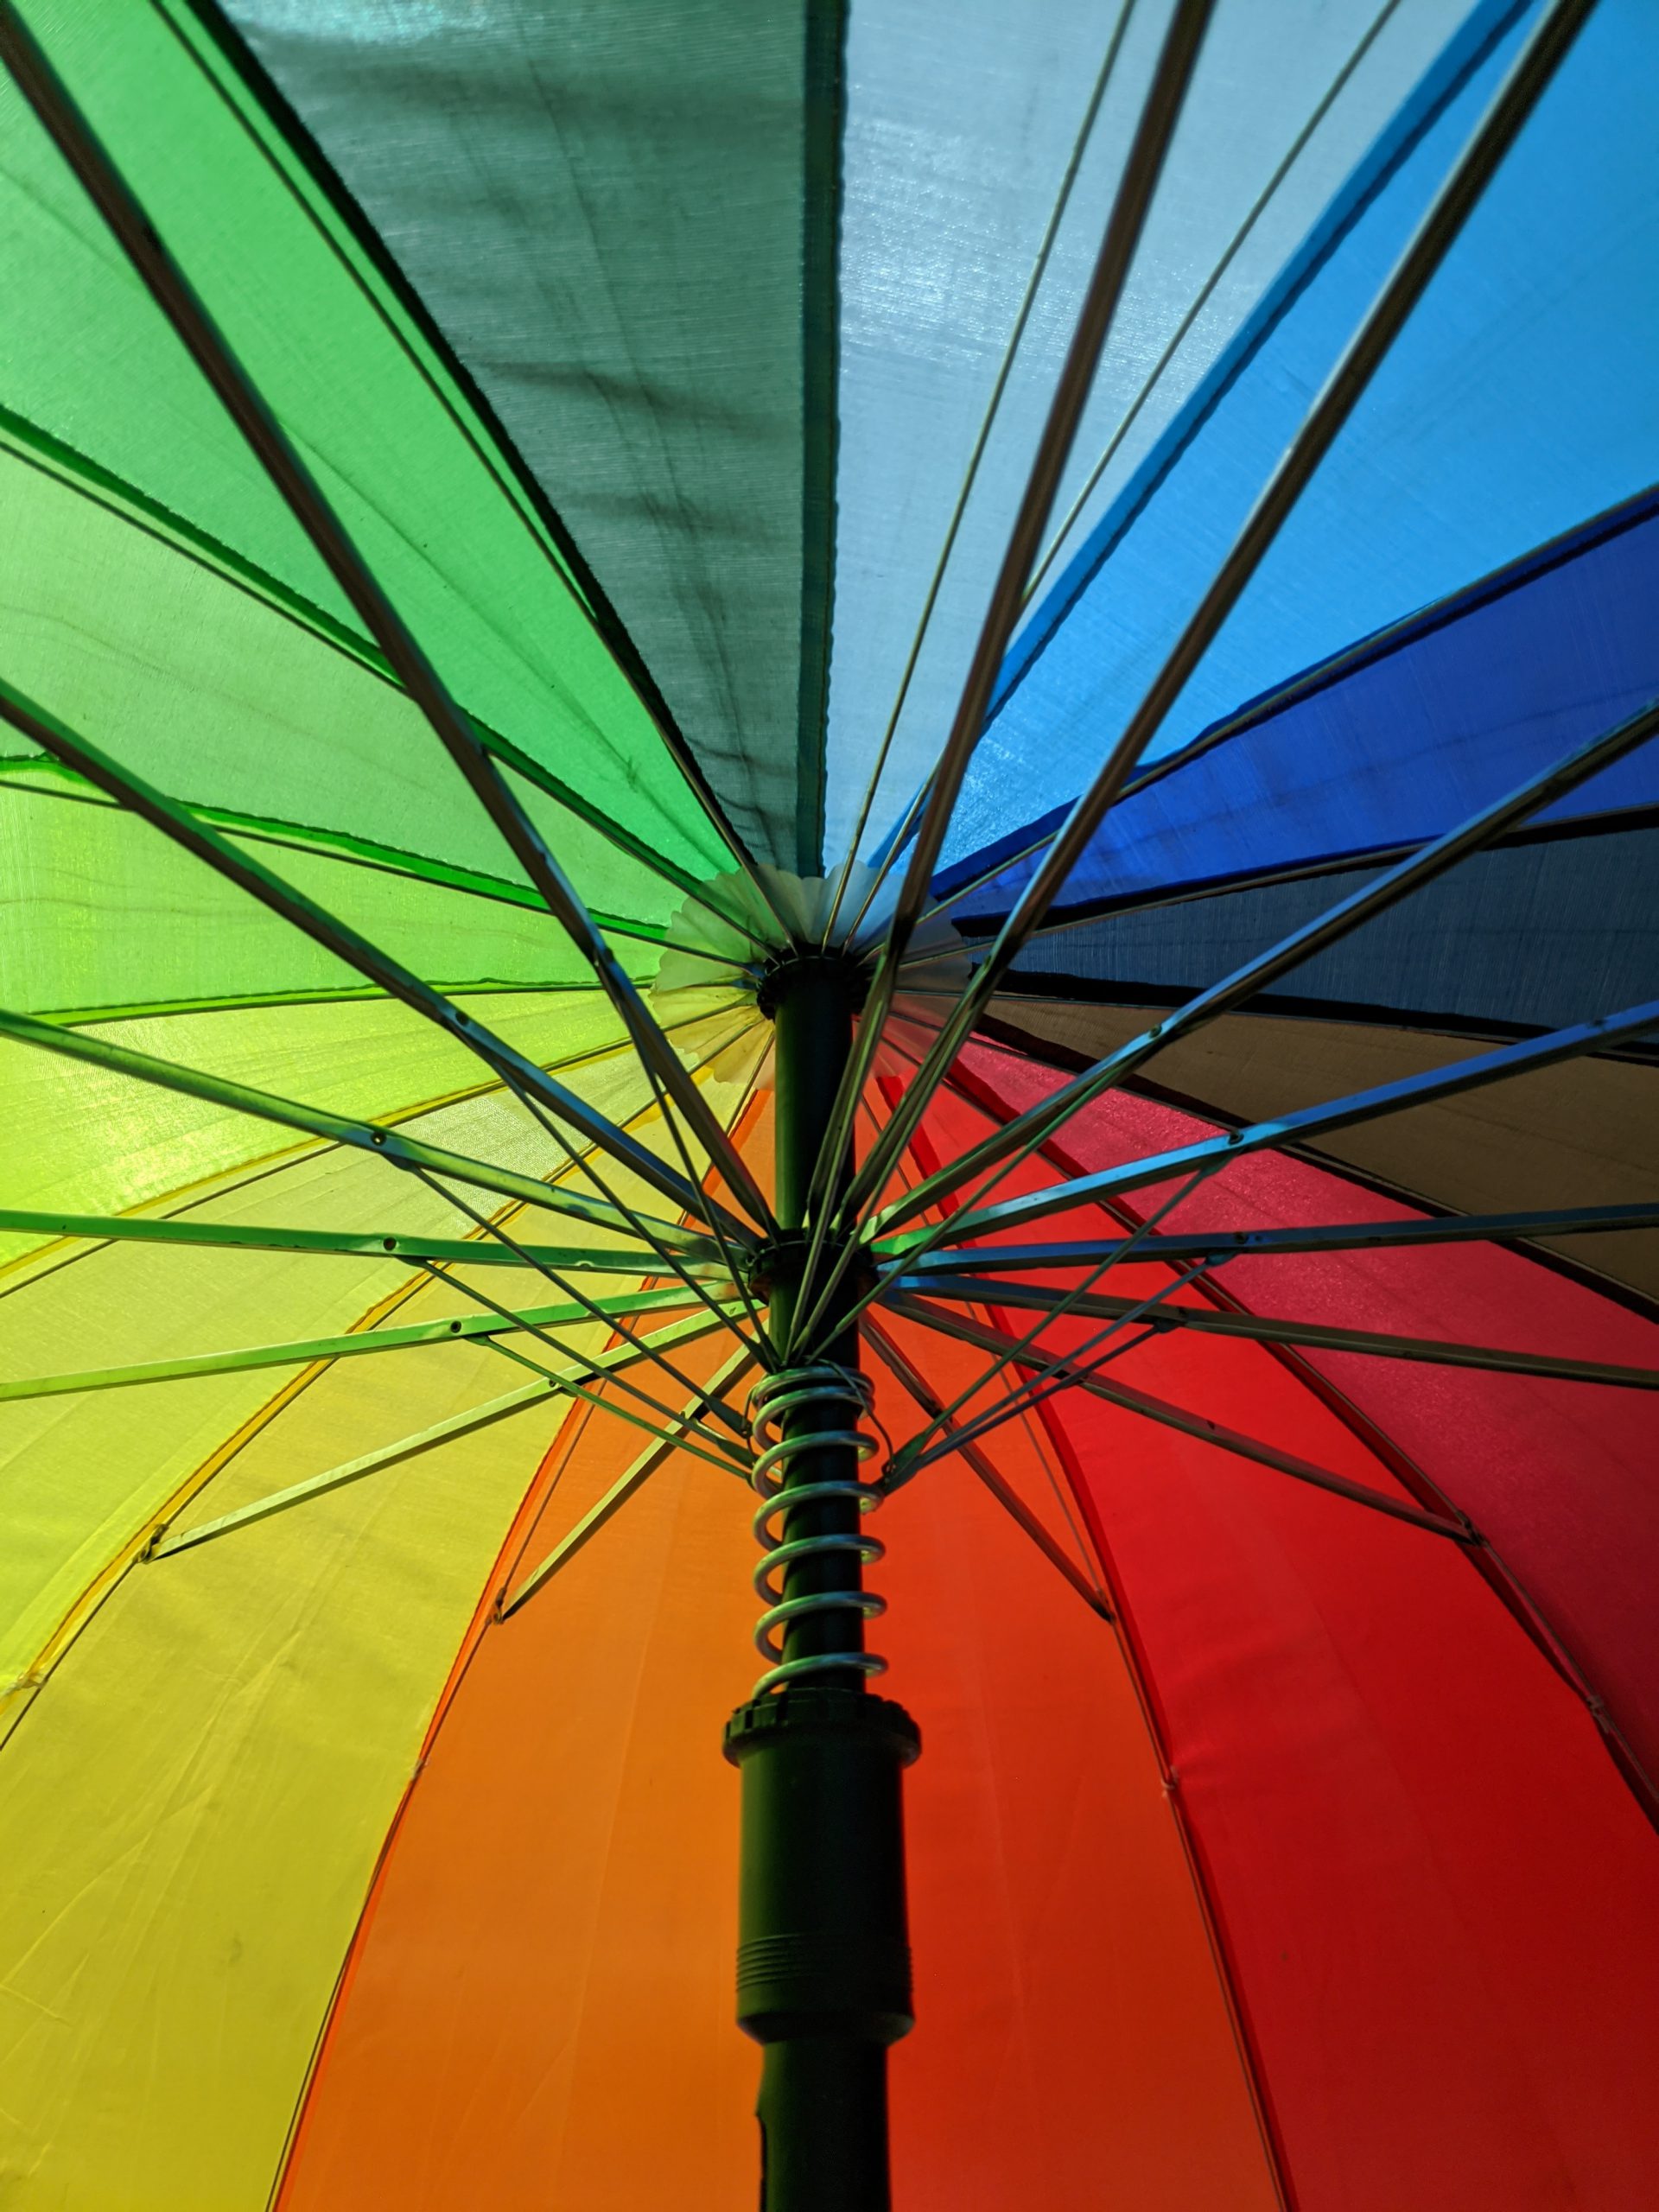 An image of an umbrella to represent umbrella companies.